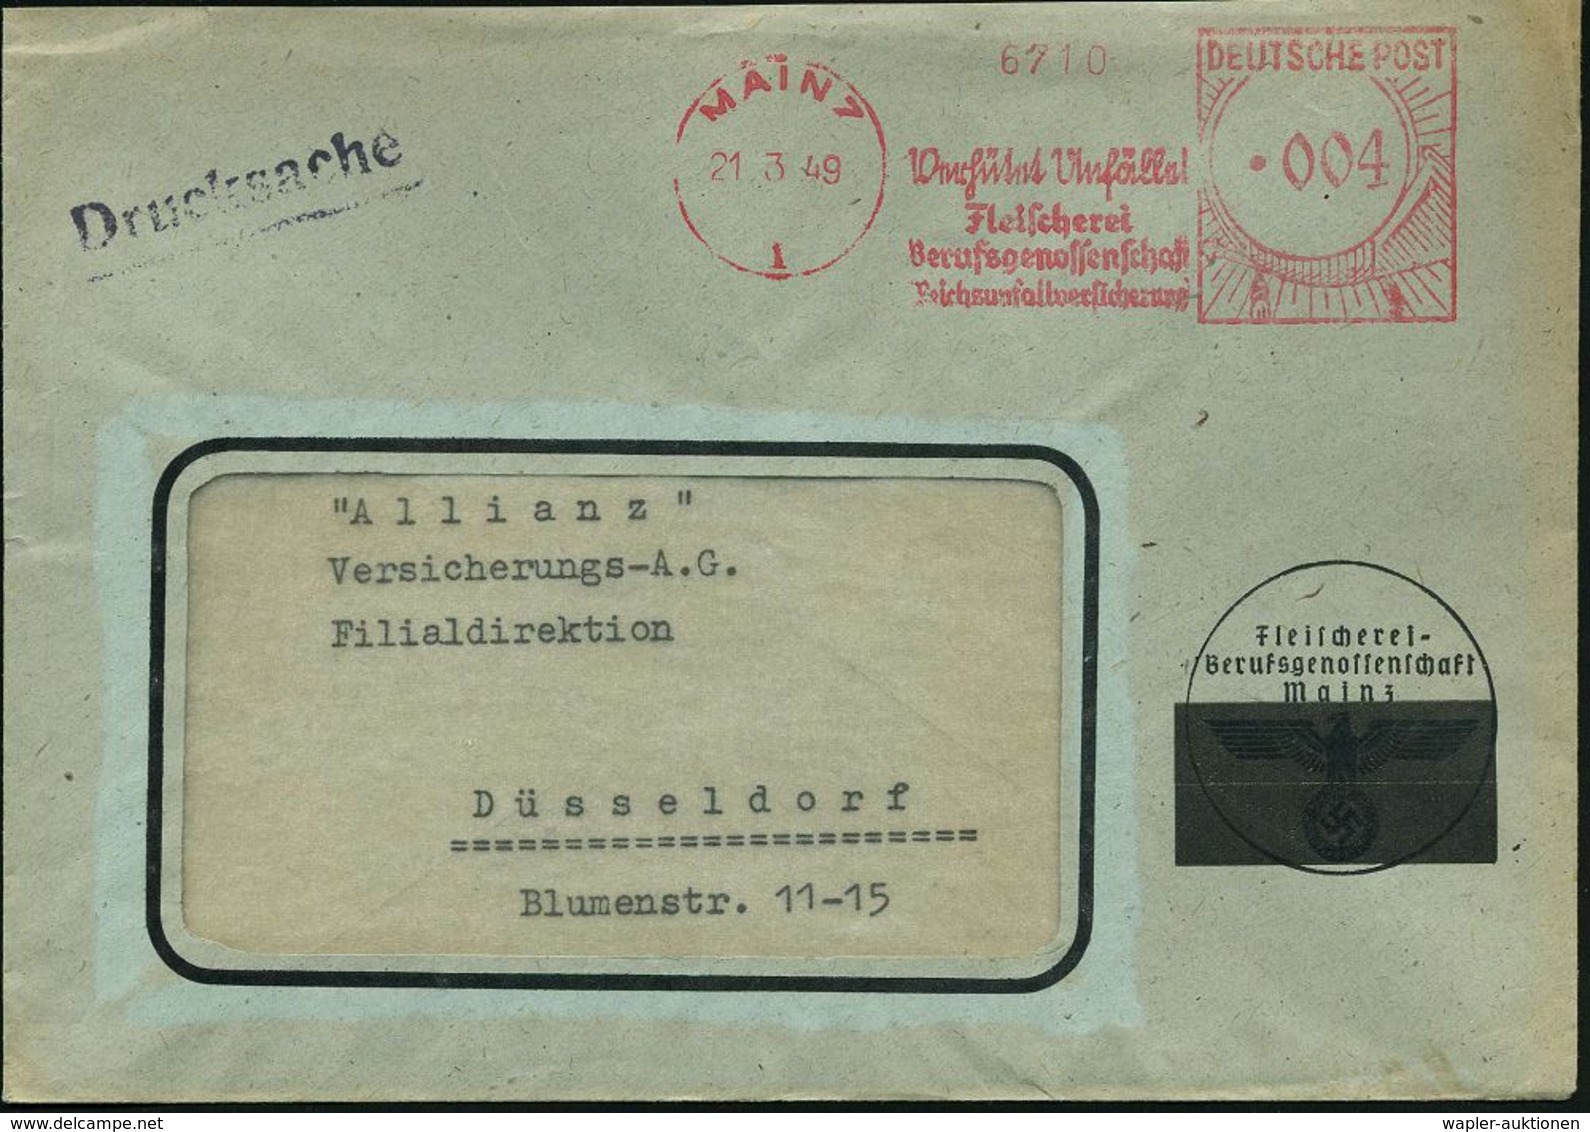 SÜTTERLIN : MAINZ/ 1/ Verhütet Unfälle!/ Fleischerei/ Berufsgenossenschaft/ Reichsunfallversicherung 1949 (21.3.) Selten - Non Classificati